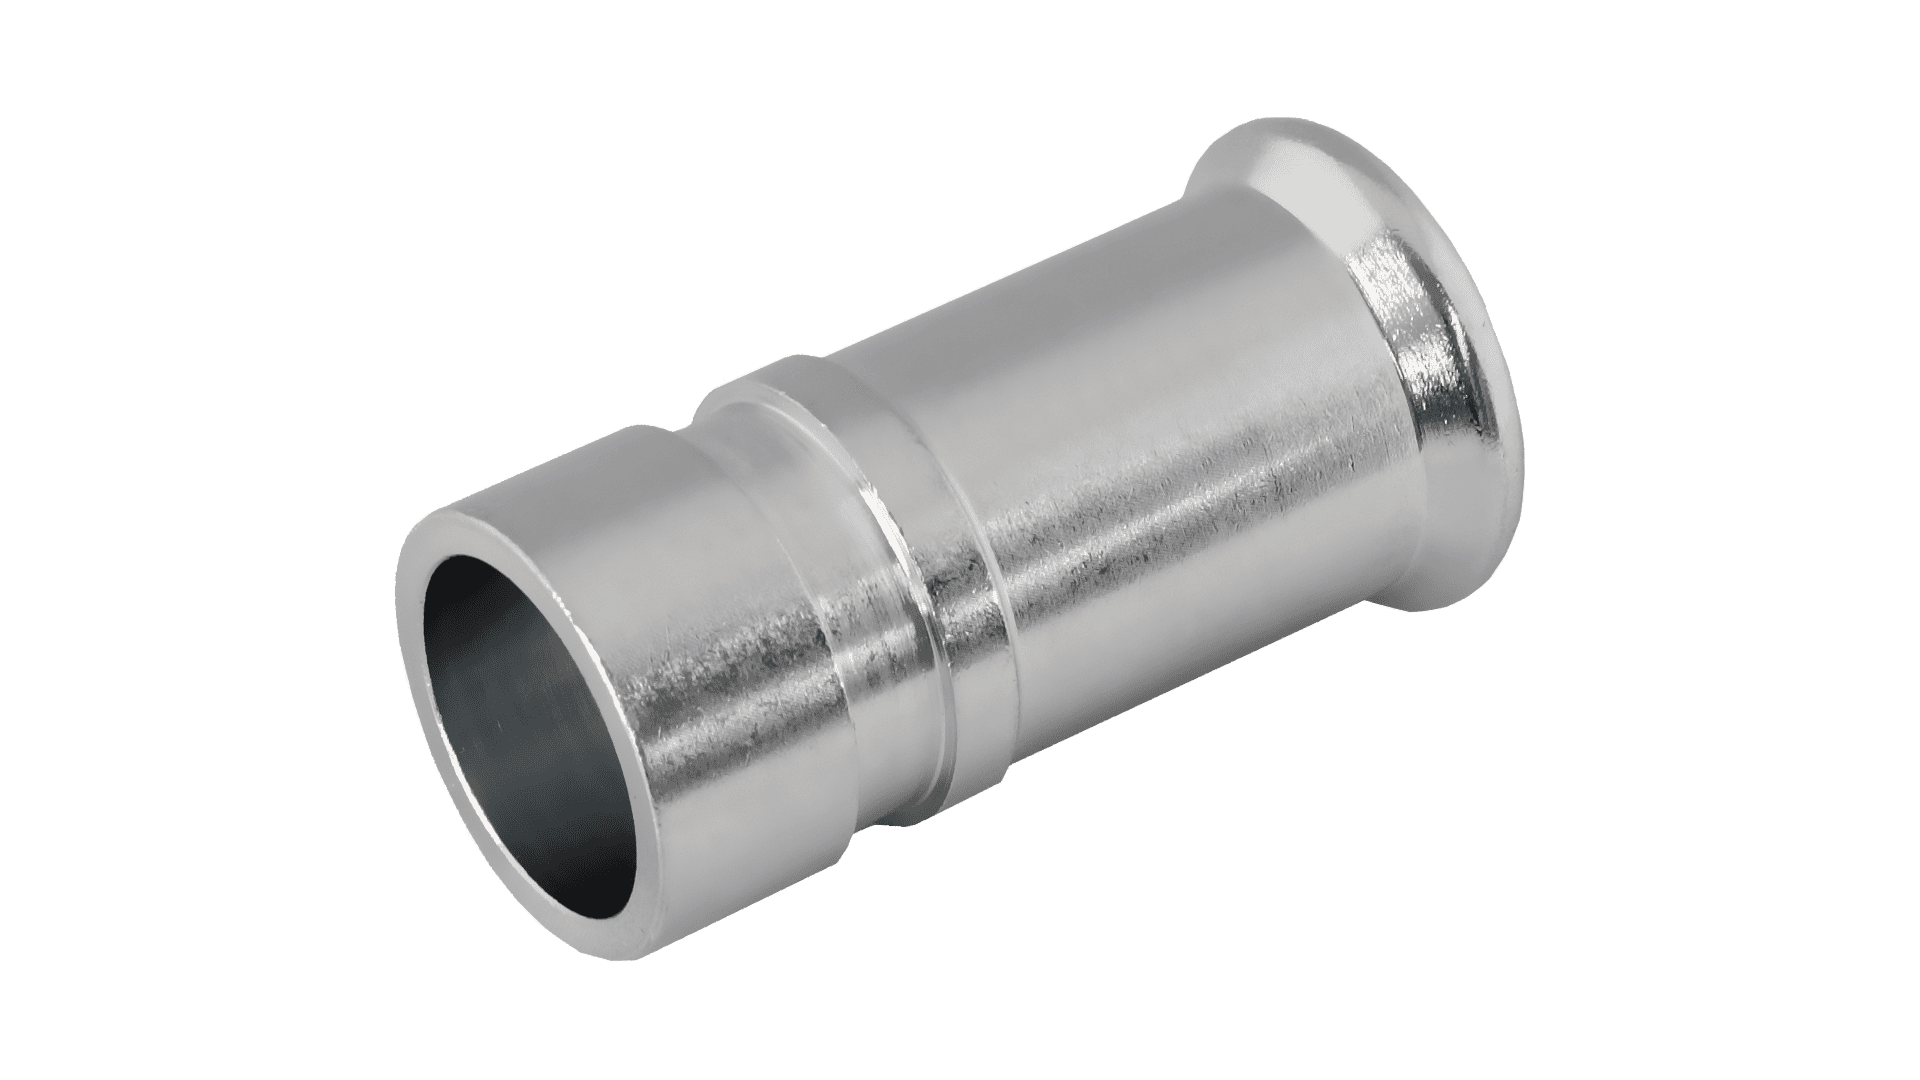 KAN-therm - Systém Sprinkler Inox - Kompatibilita systému s ocelovými drážkovými systémy díky technice ohýbaných spojů